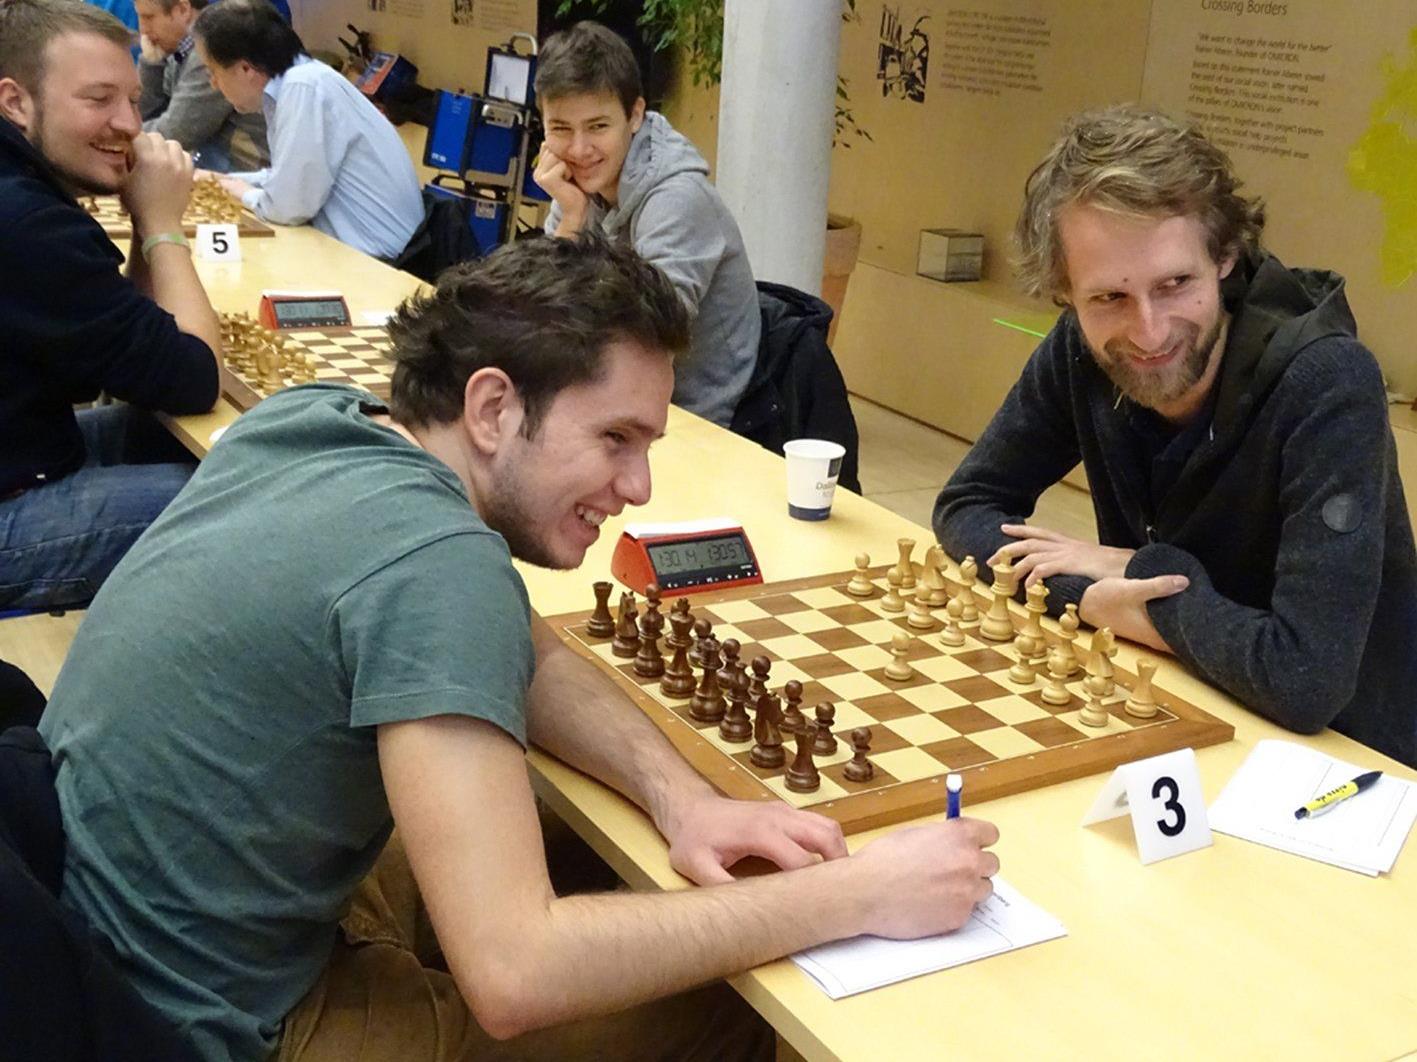 Gute Stimmung herrscht unter den Spielern während den Schach-Partien.